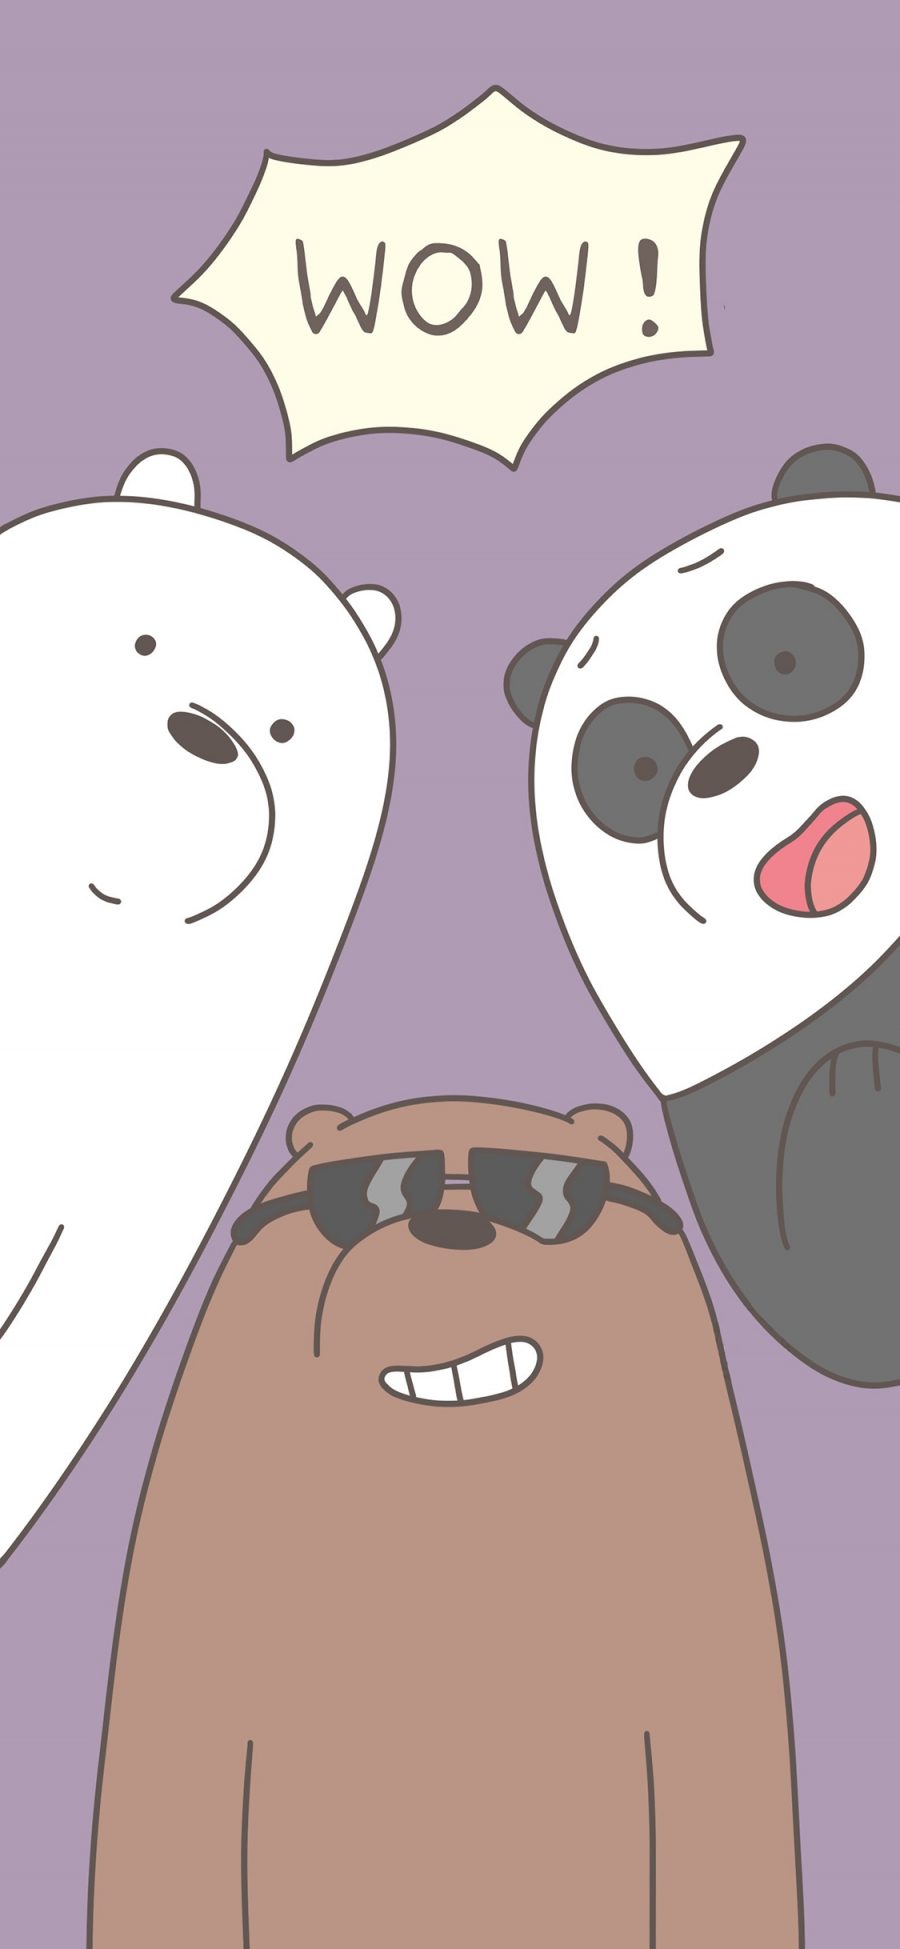 [2436×1125]咱们裸熊 紫色 wow 北极熊 熊猫 棕熊 动画 苹果手机动漫壁纸图片